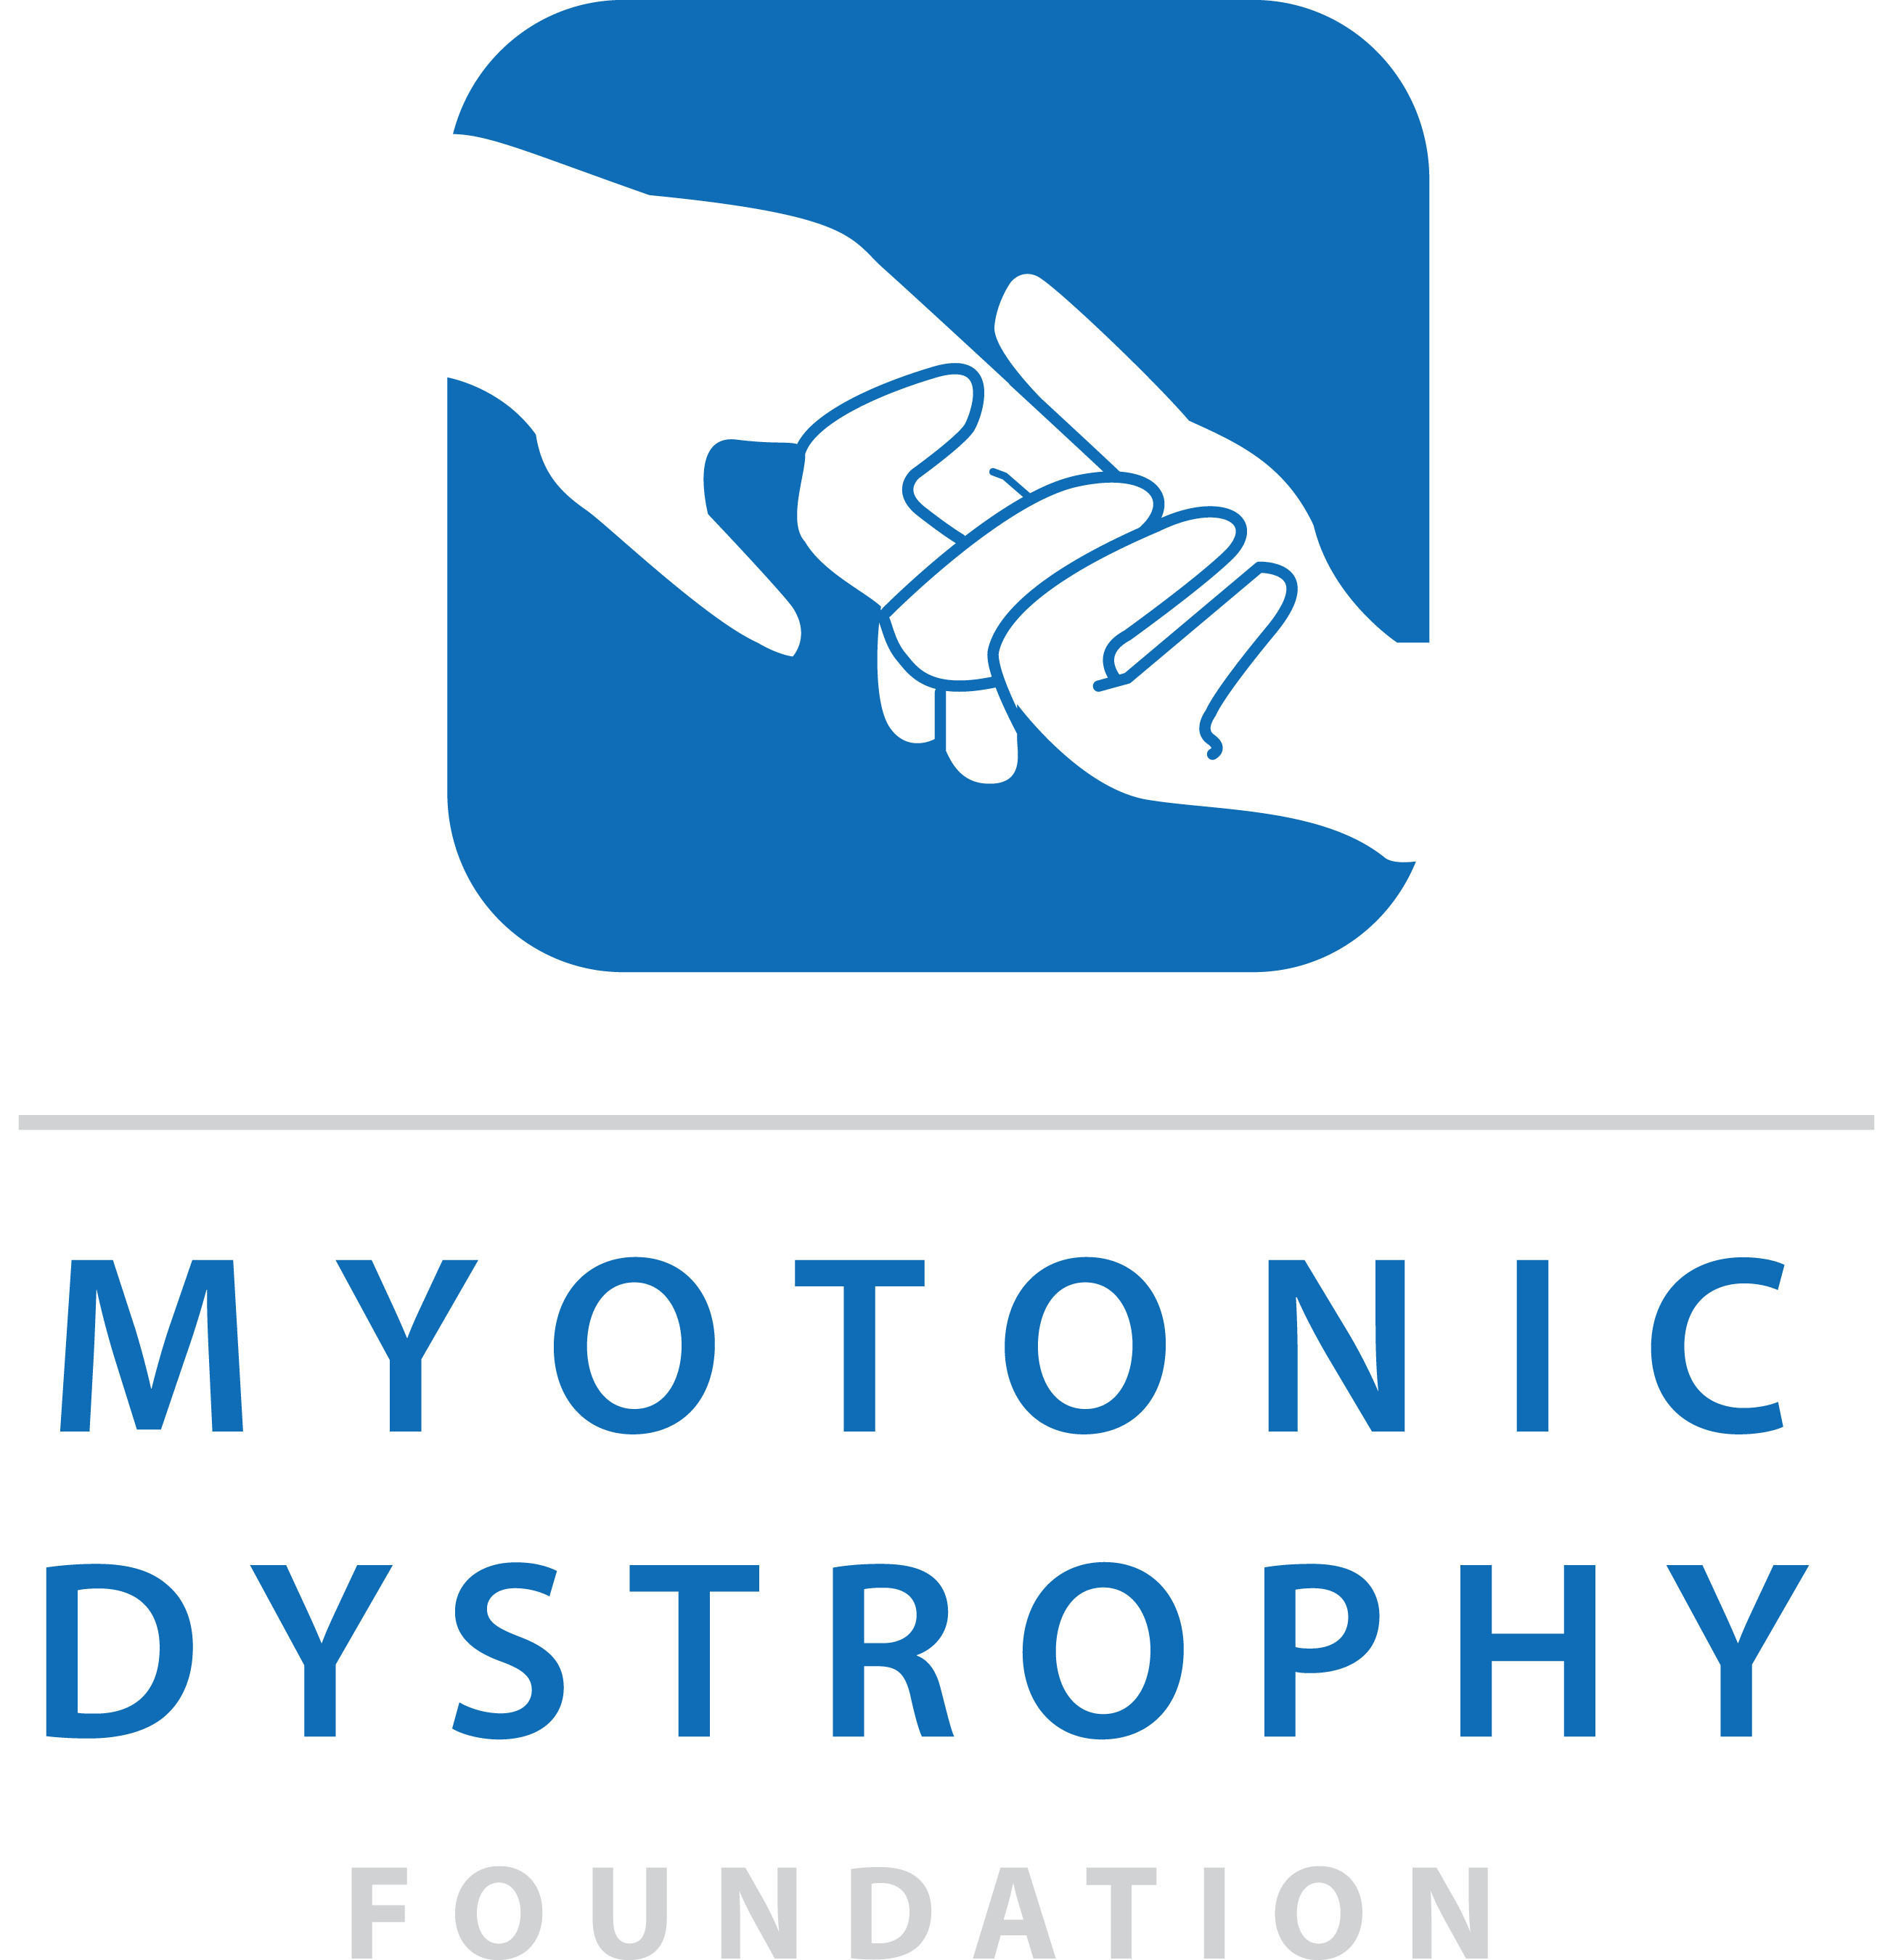 Myotonic Dystrophy Foundation Logo. (PRNewsFoto/Myotonic Dystrophy Foundation) (PRNewsFoto/MYOTONIC DYSTROPHY FOUNDATION)